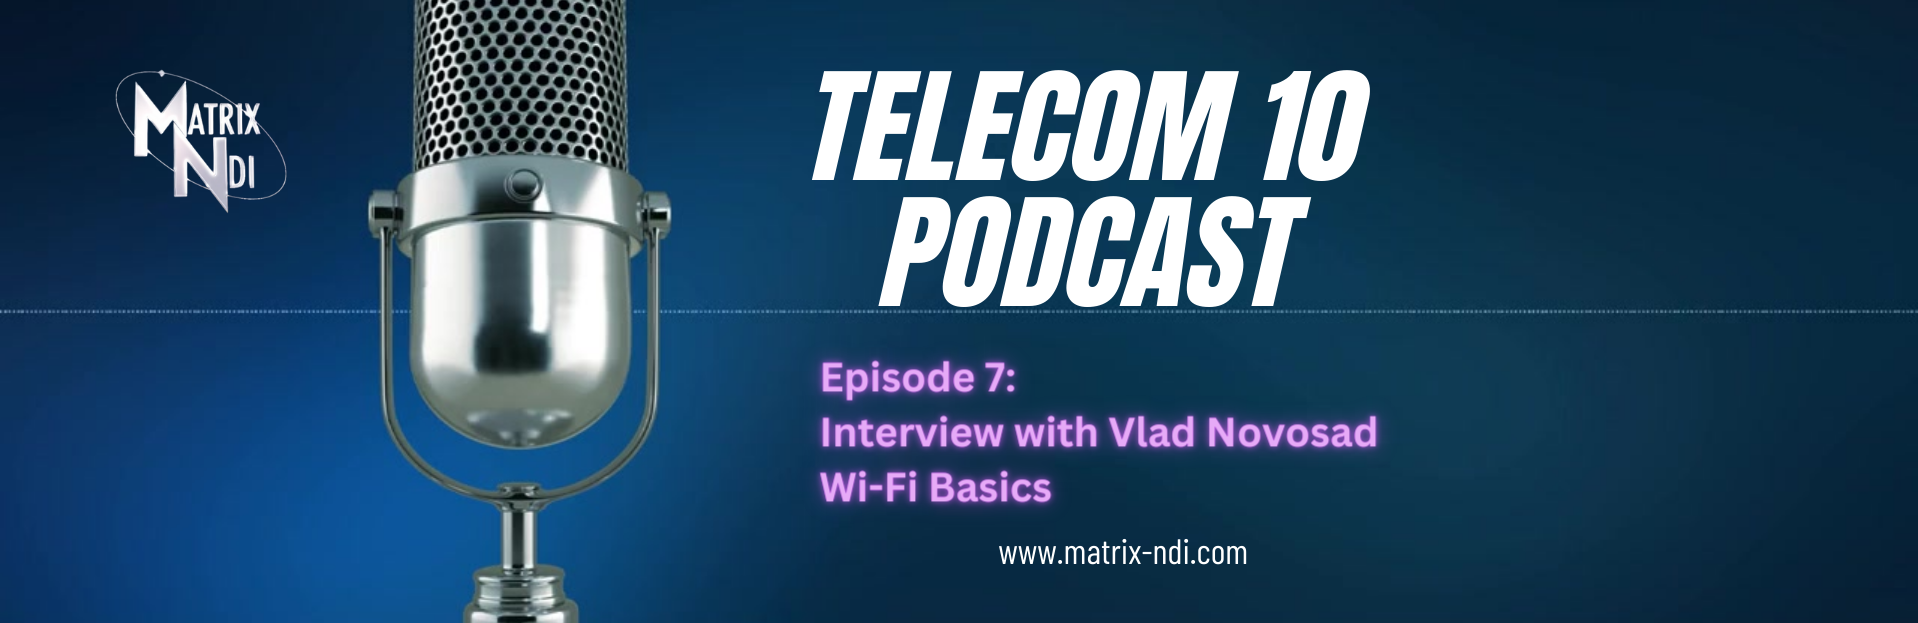 Matrix-NDI Telecom 10 Podcast 7: Wi-Fi Basics